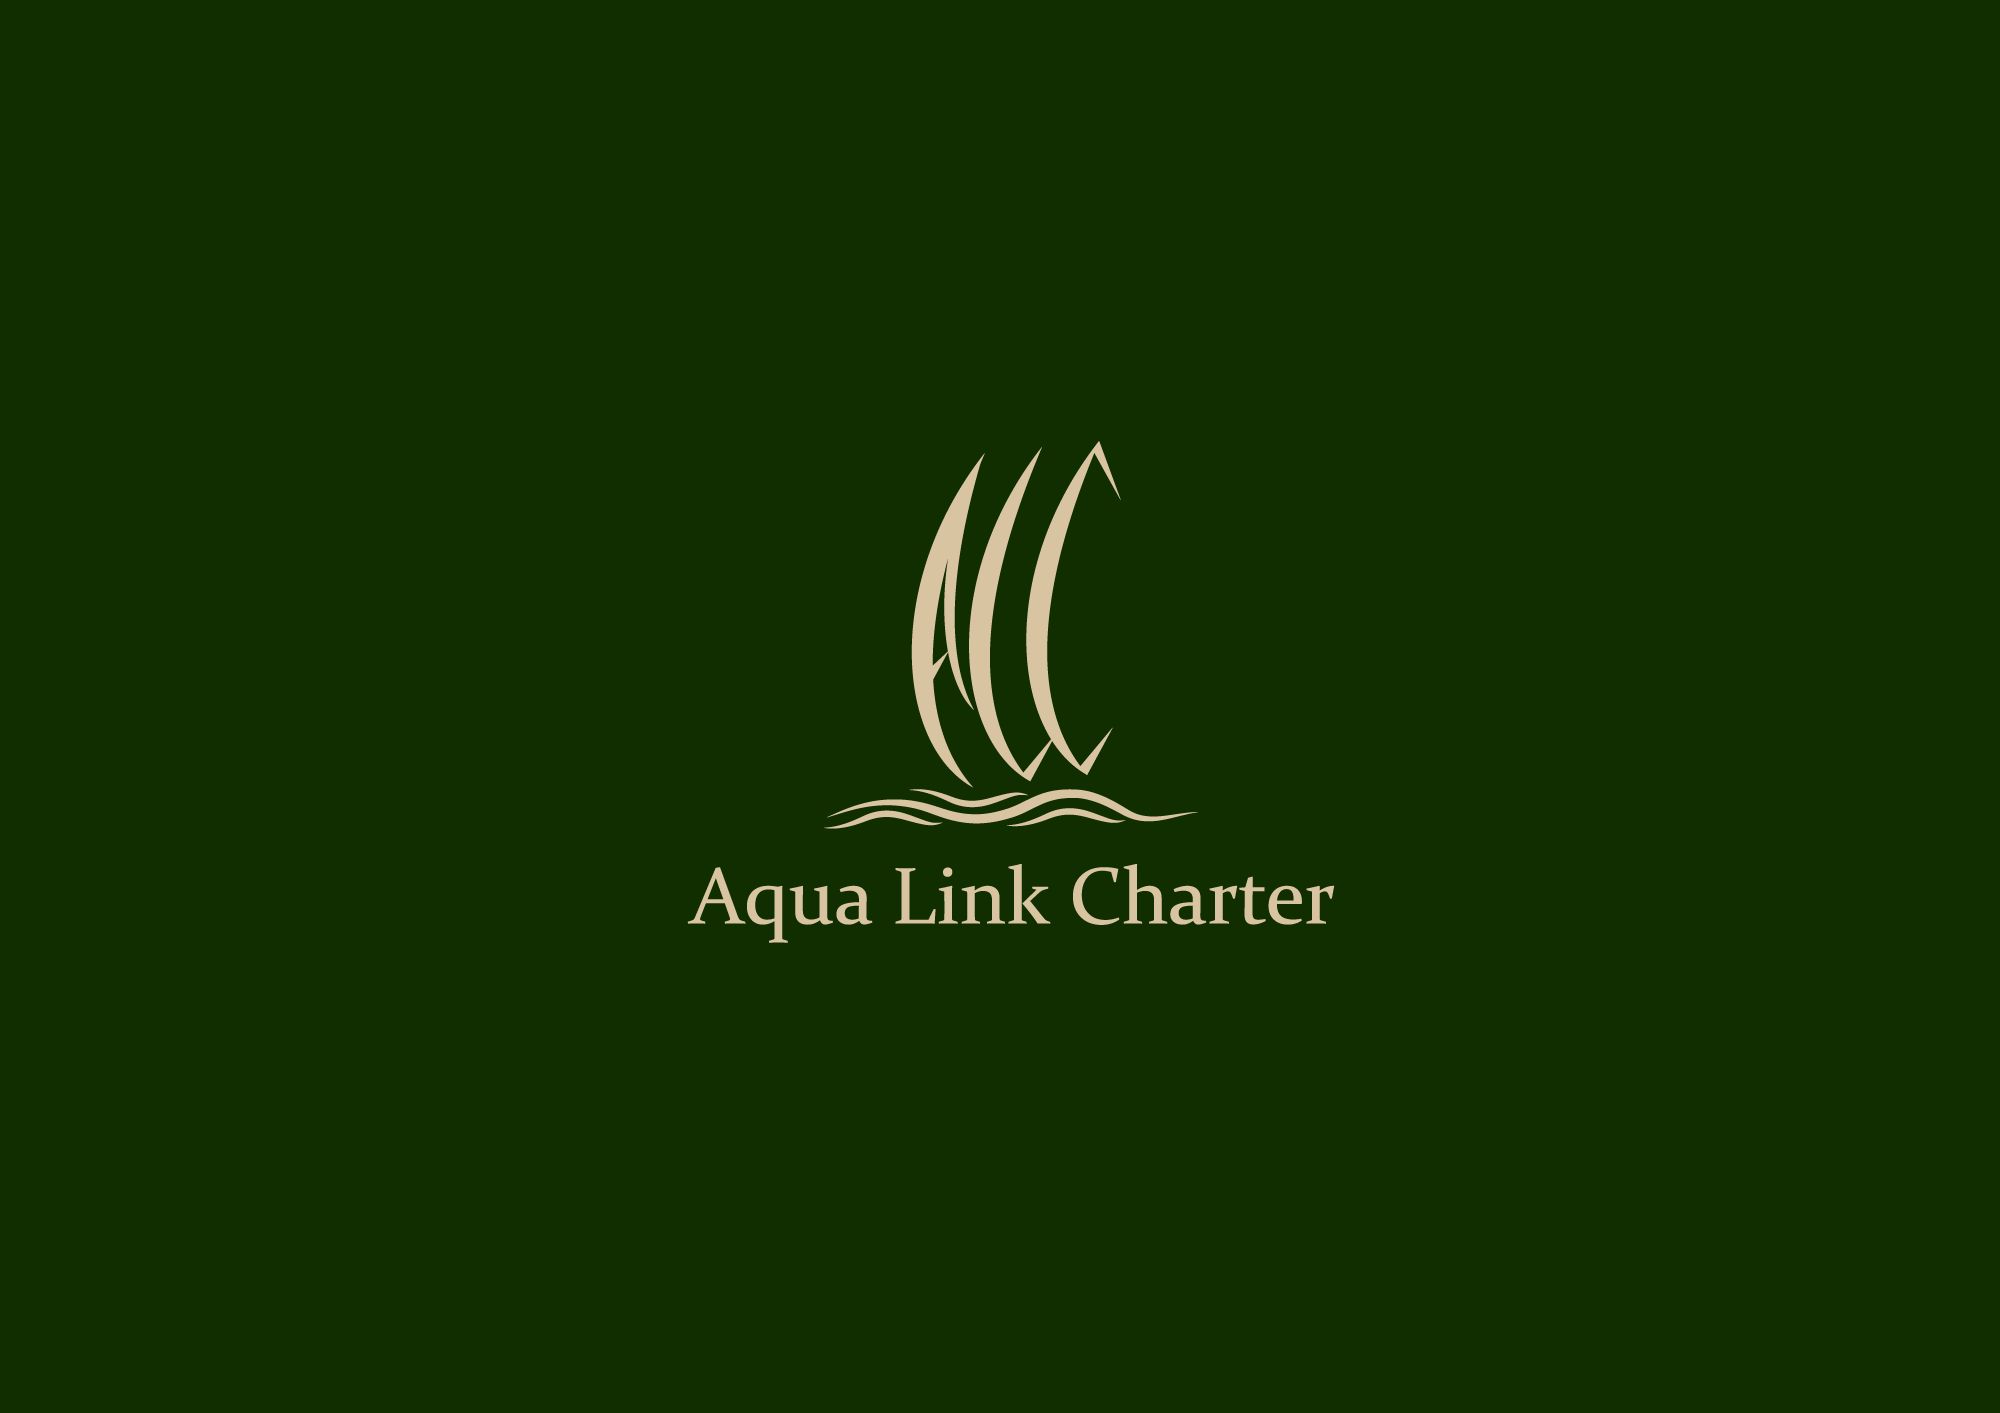 Аренда (чартер) парусных яхт - Aqua Link Charter - дизайнер Alphir